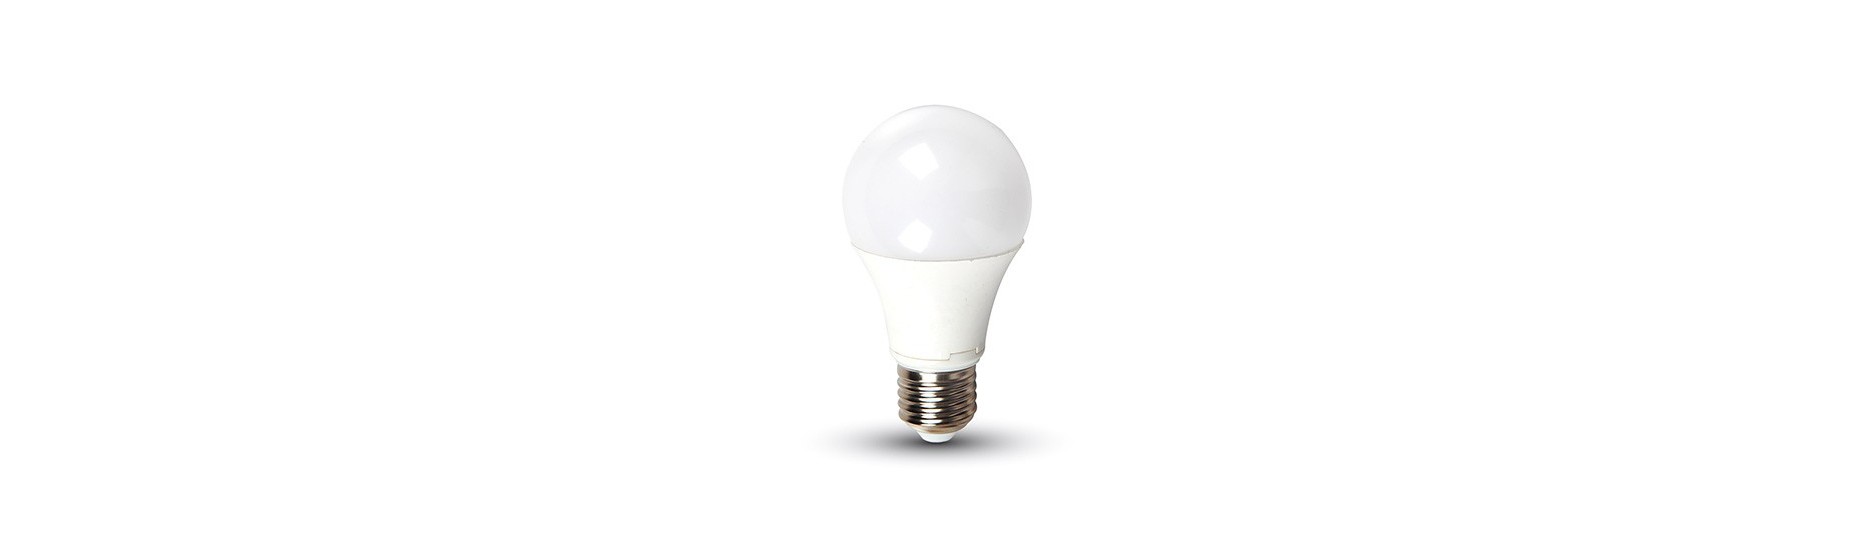 Bombillas LED Casquillo Grande E27 | Comprar bombillas LED